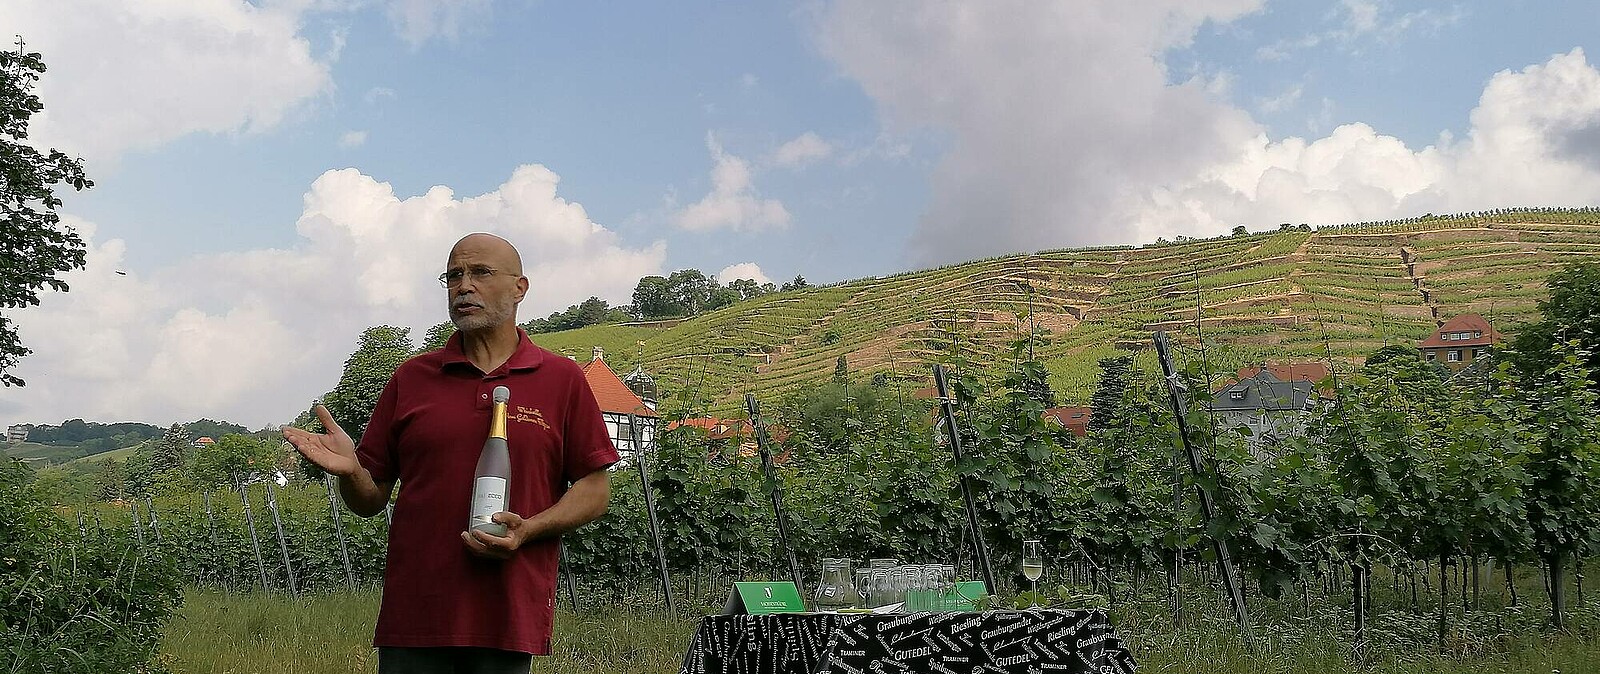 Starten Sie Ihre Weinwanderung genussvoll mit einem guten Tropfen sächsischen Wein zur Begrüßung und stärken sich für den anstehenden Aufstieg in die Weinberge.